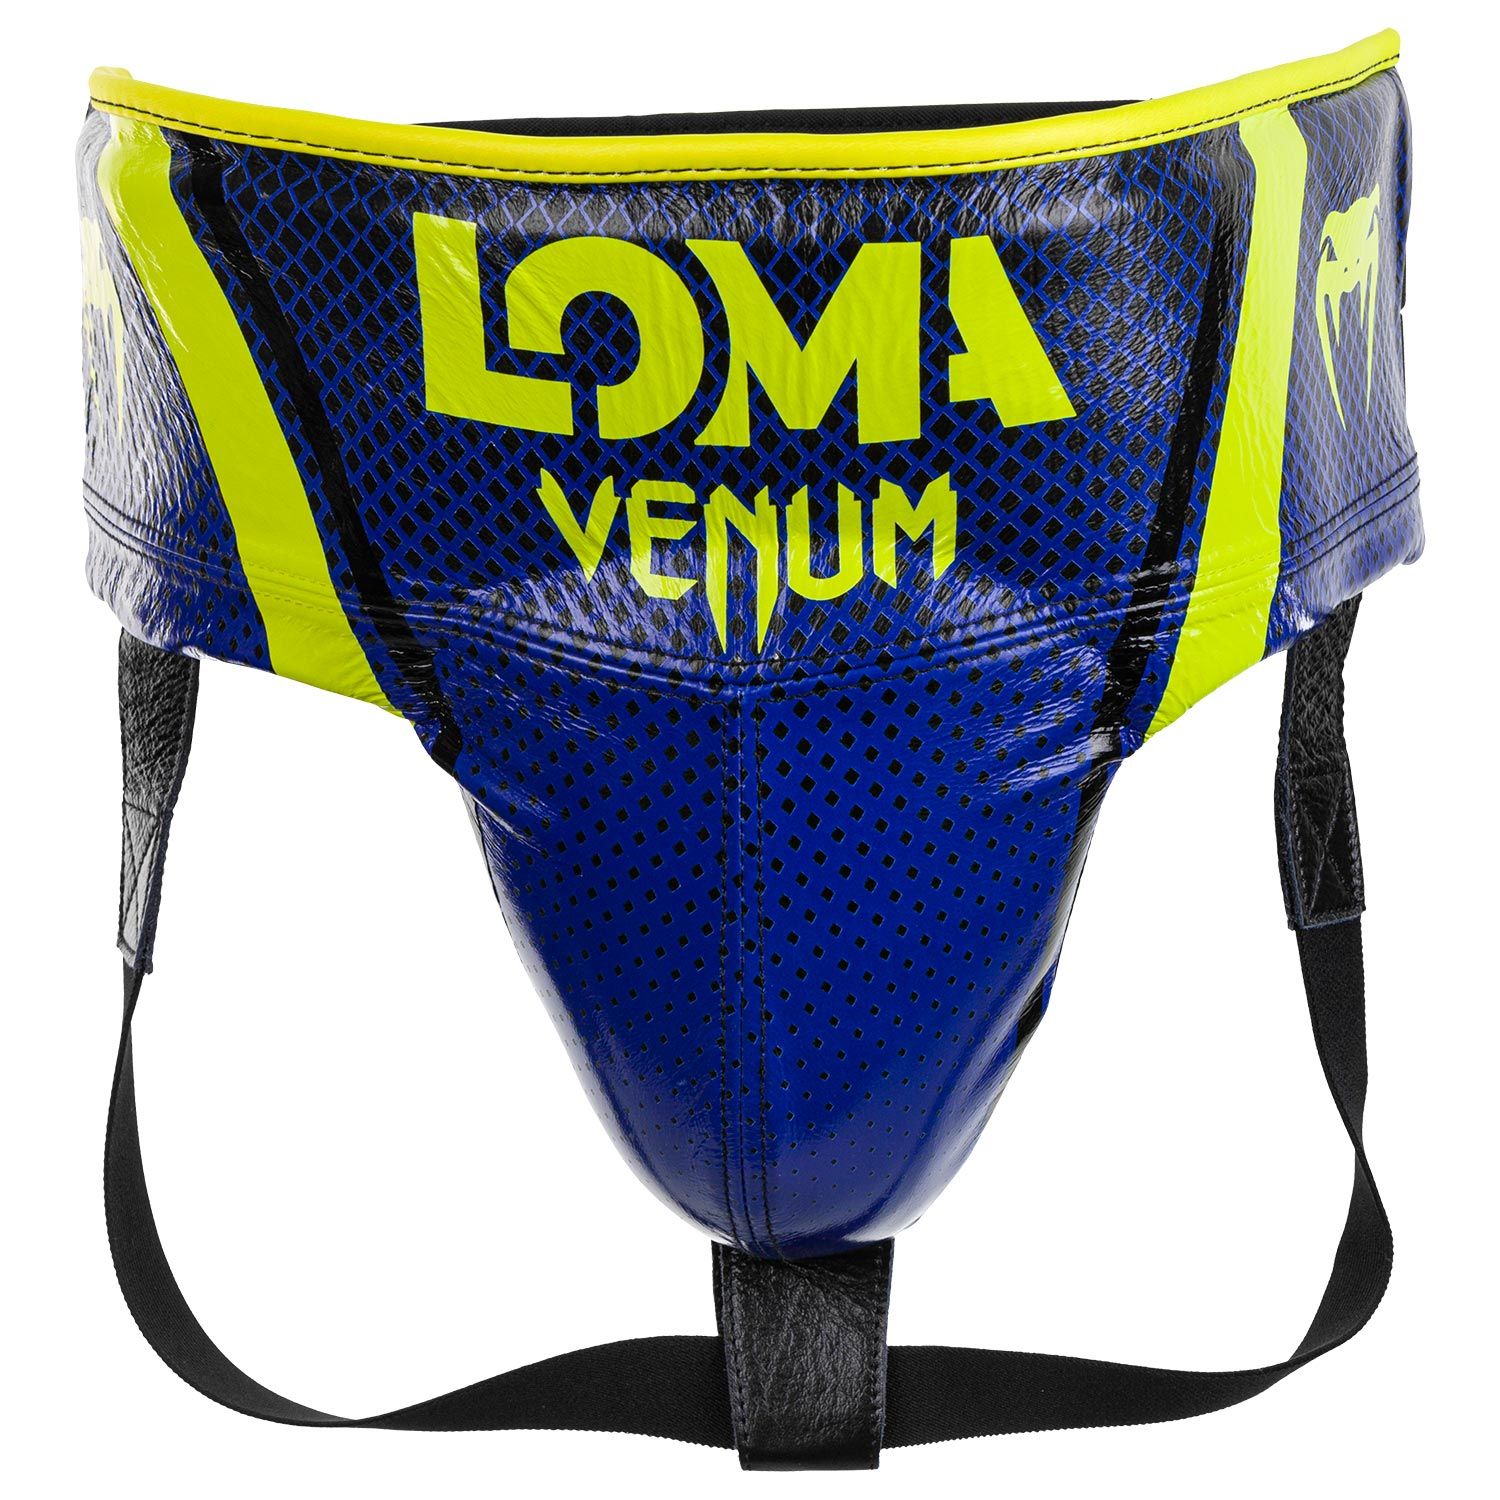 Venum Pro Box-Tiefschutz Loma Edition - Mit Klettverschluss - Blau/Gelb